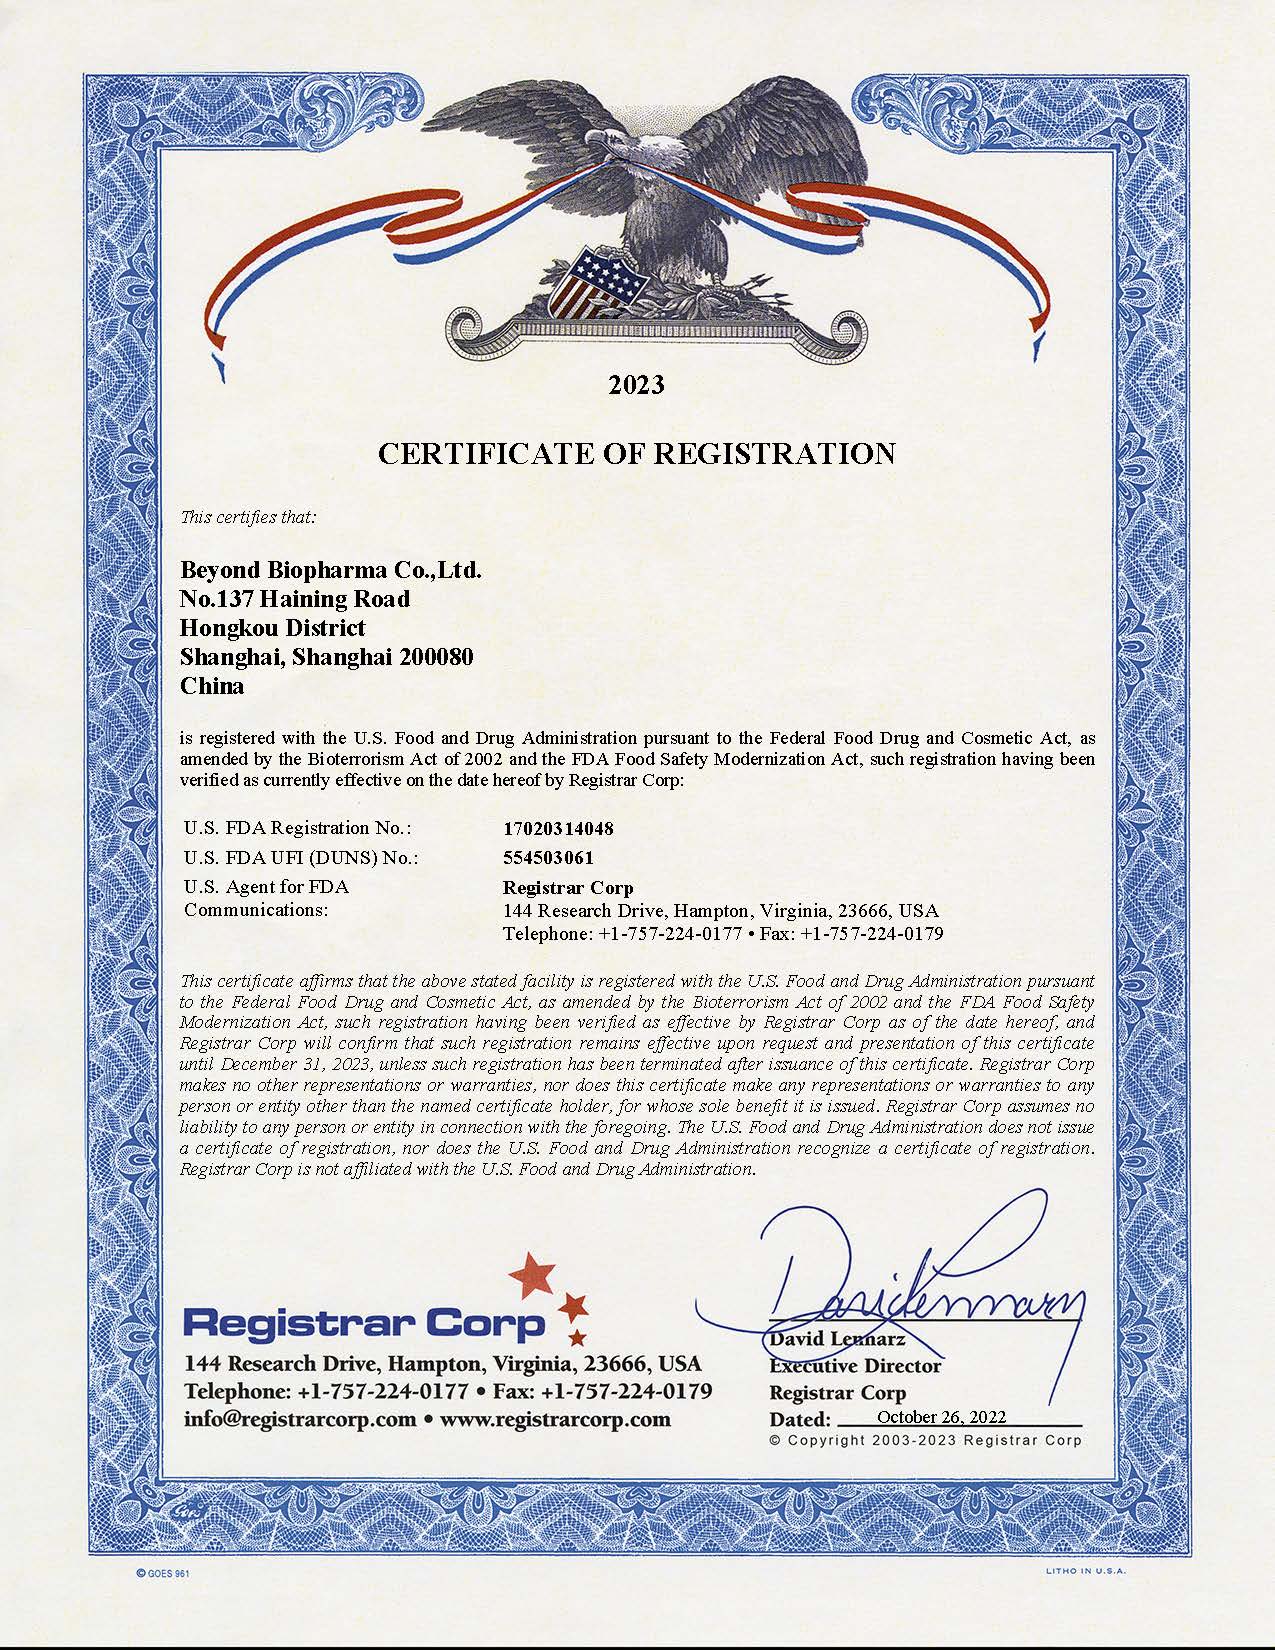 Гарні новини!Beyond Biopharma Co., Ltd. успішно оновила реєстраційний сертифікат FDA США 2023!